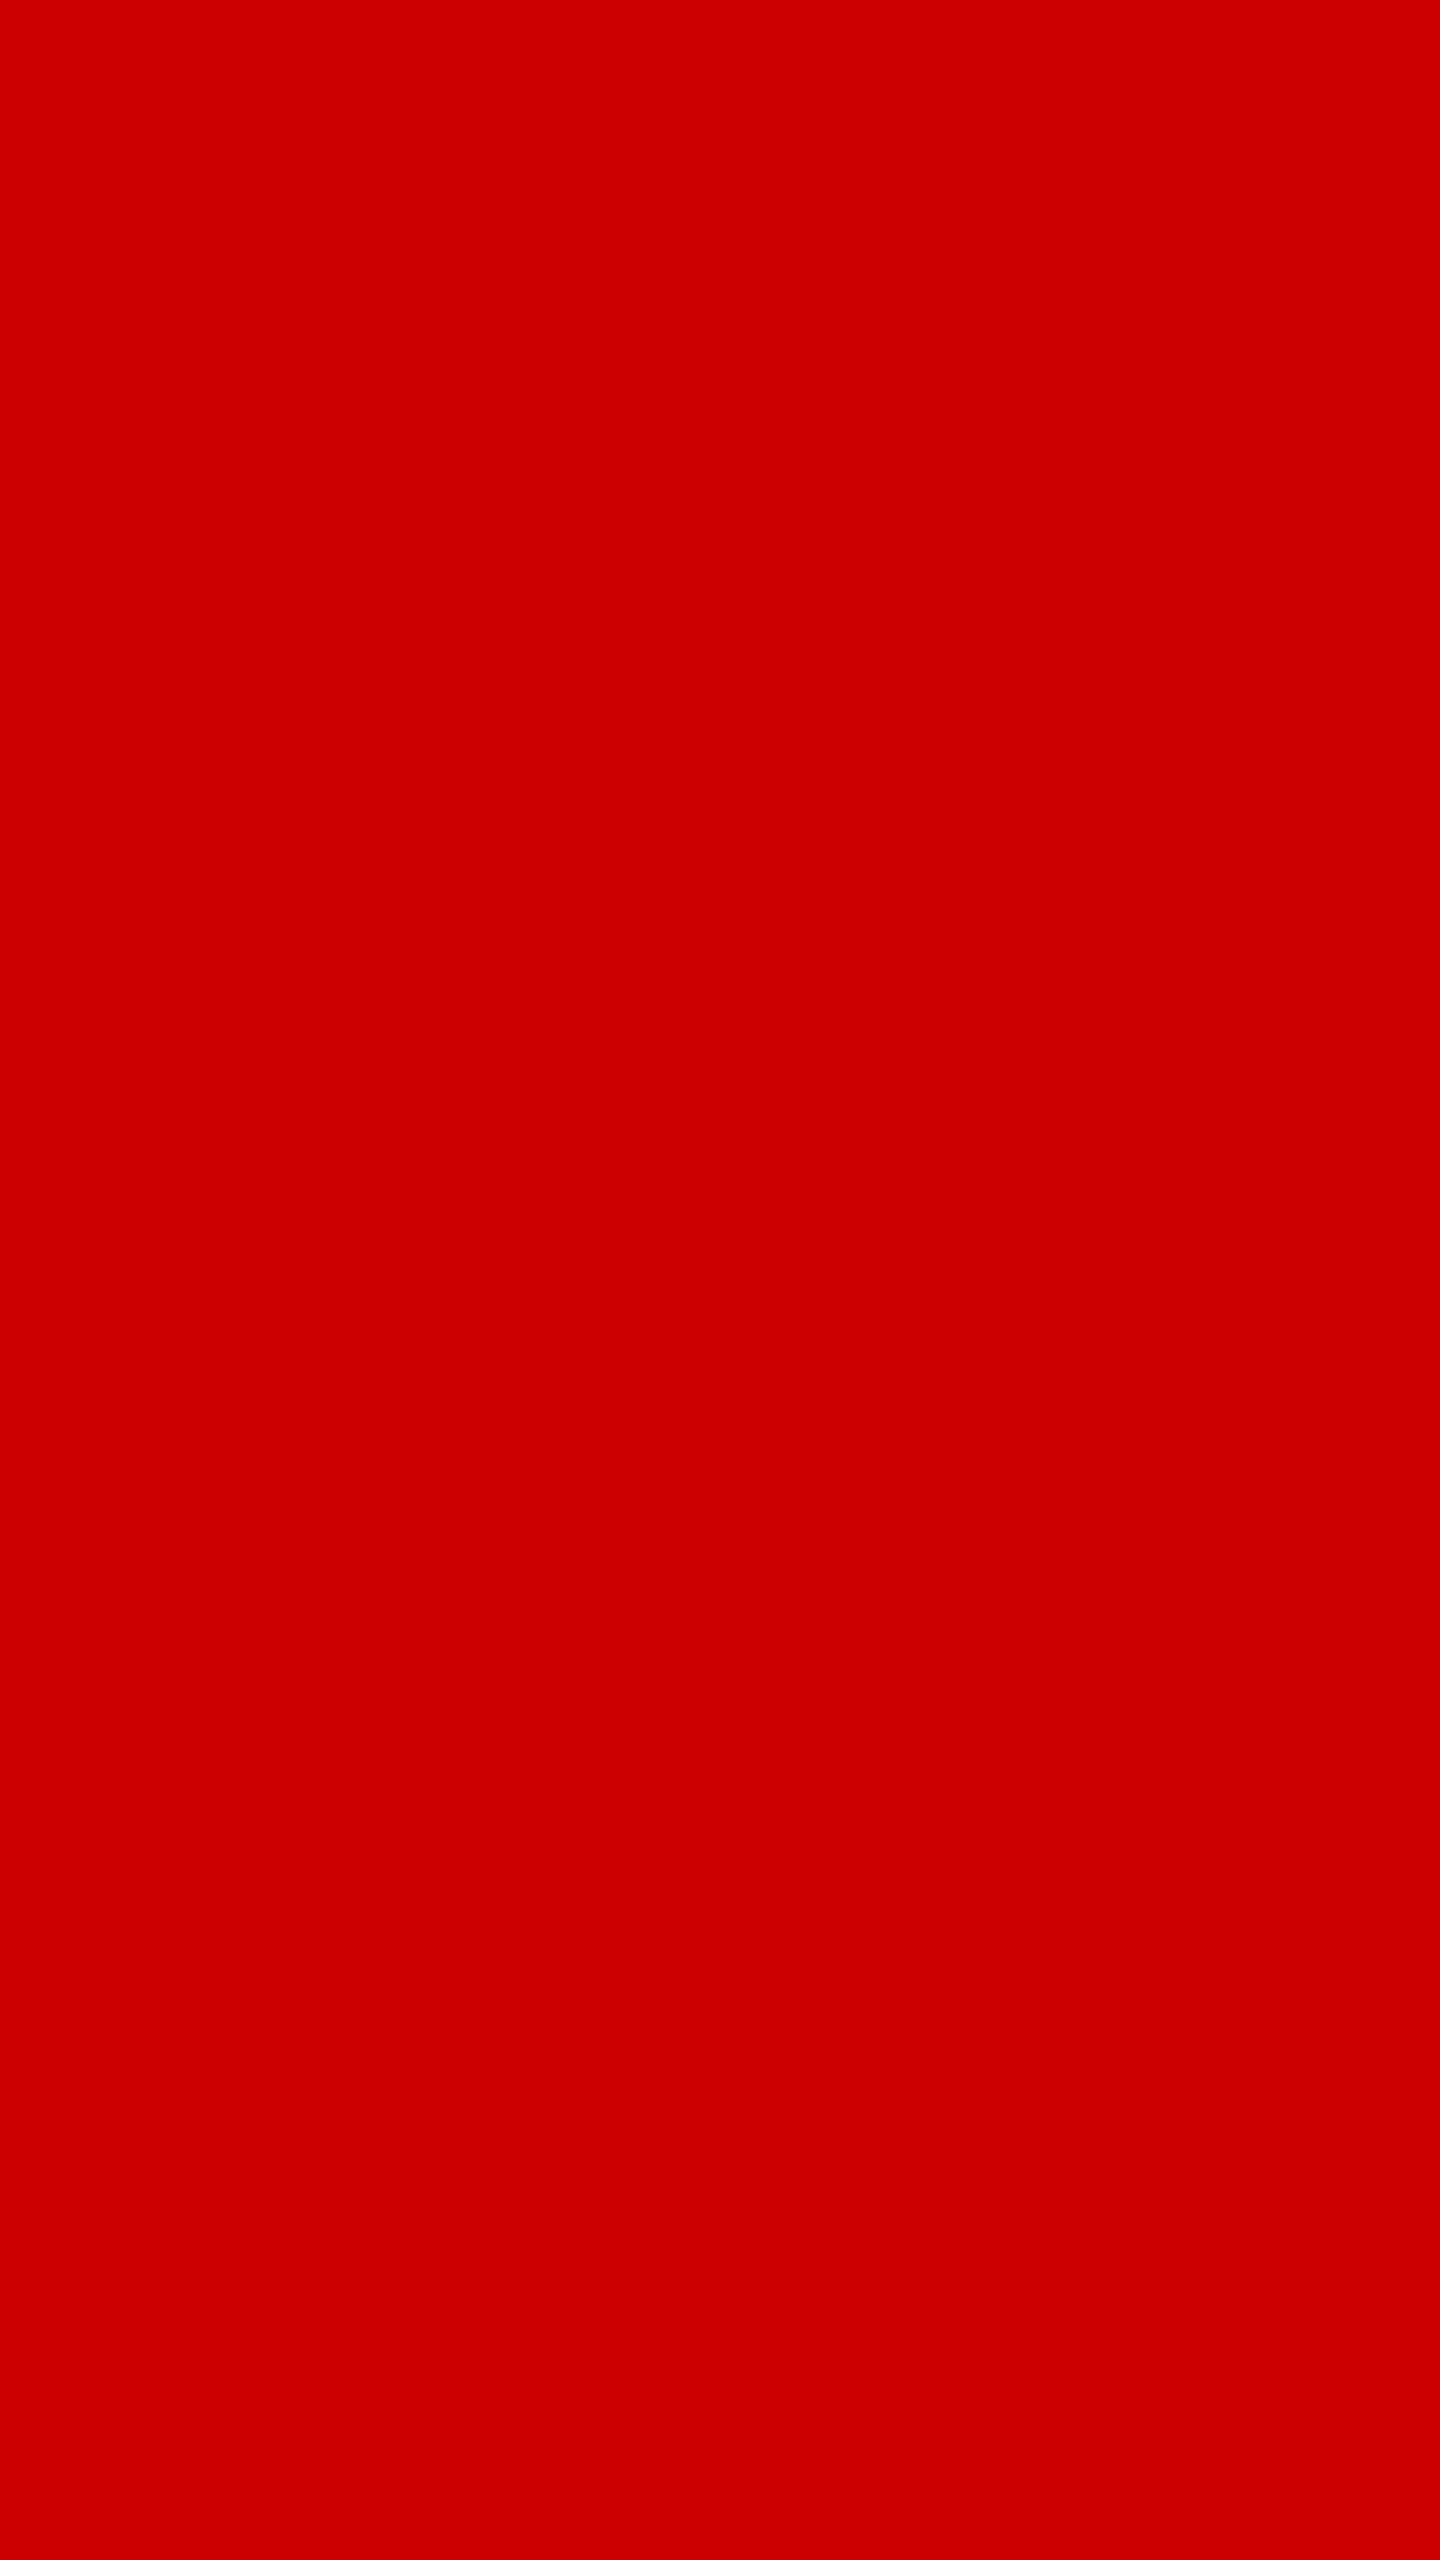 Plain Red Wallpaper